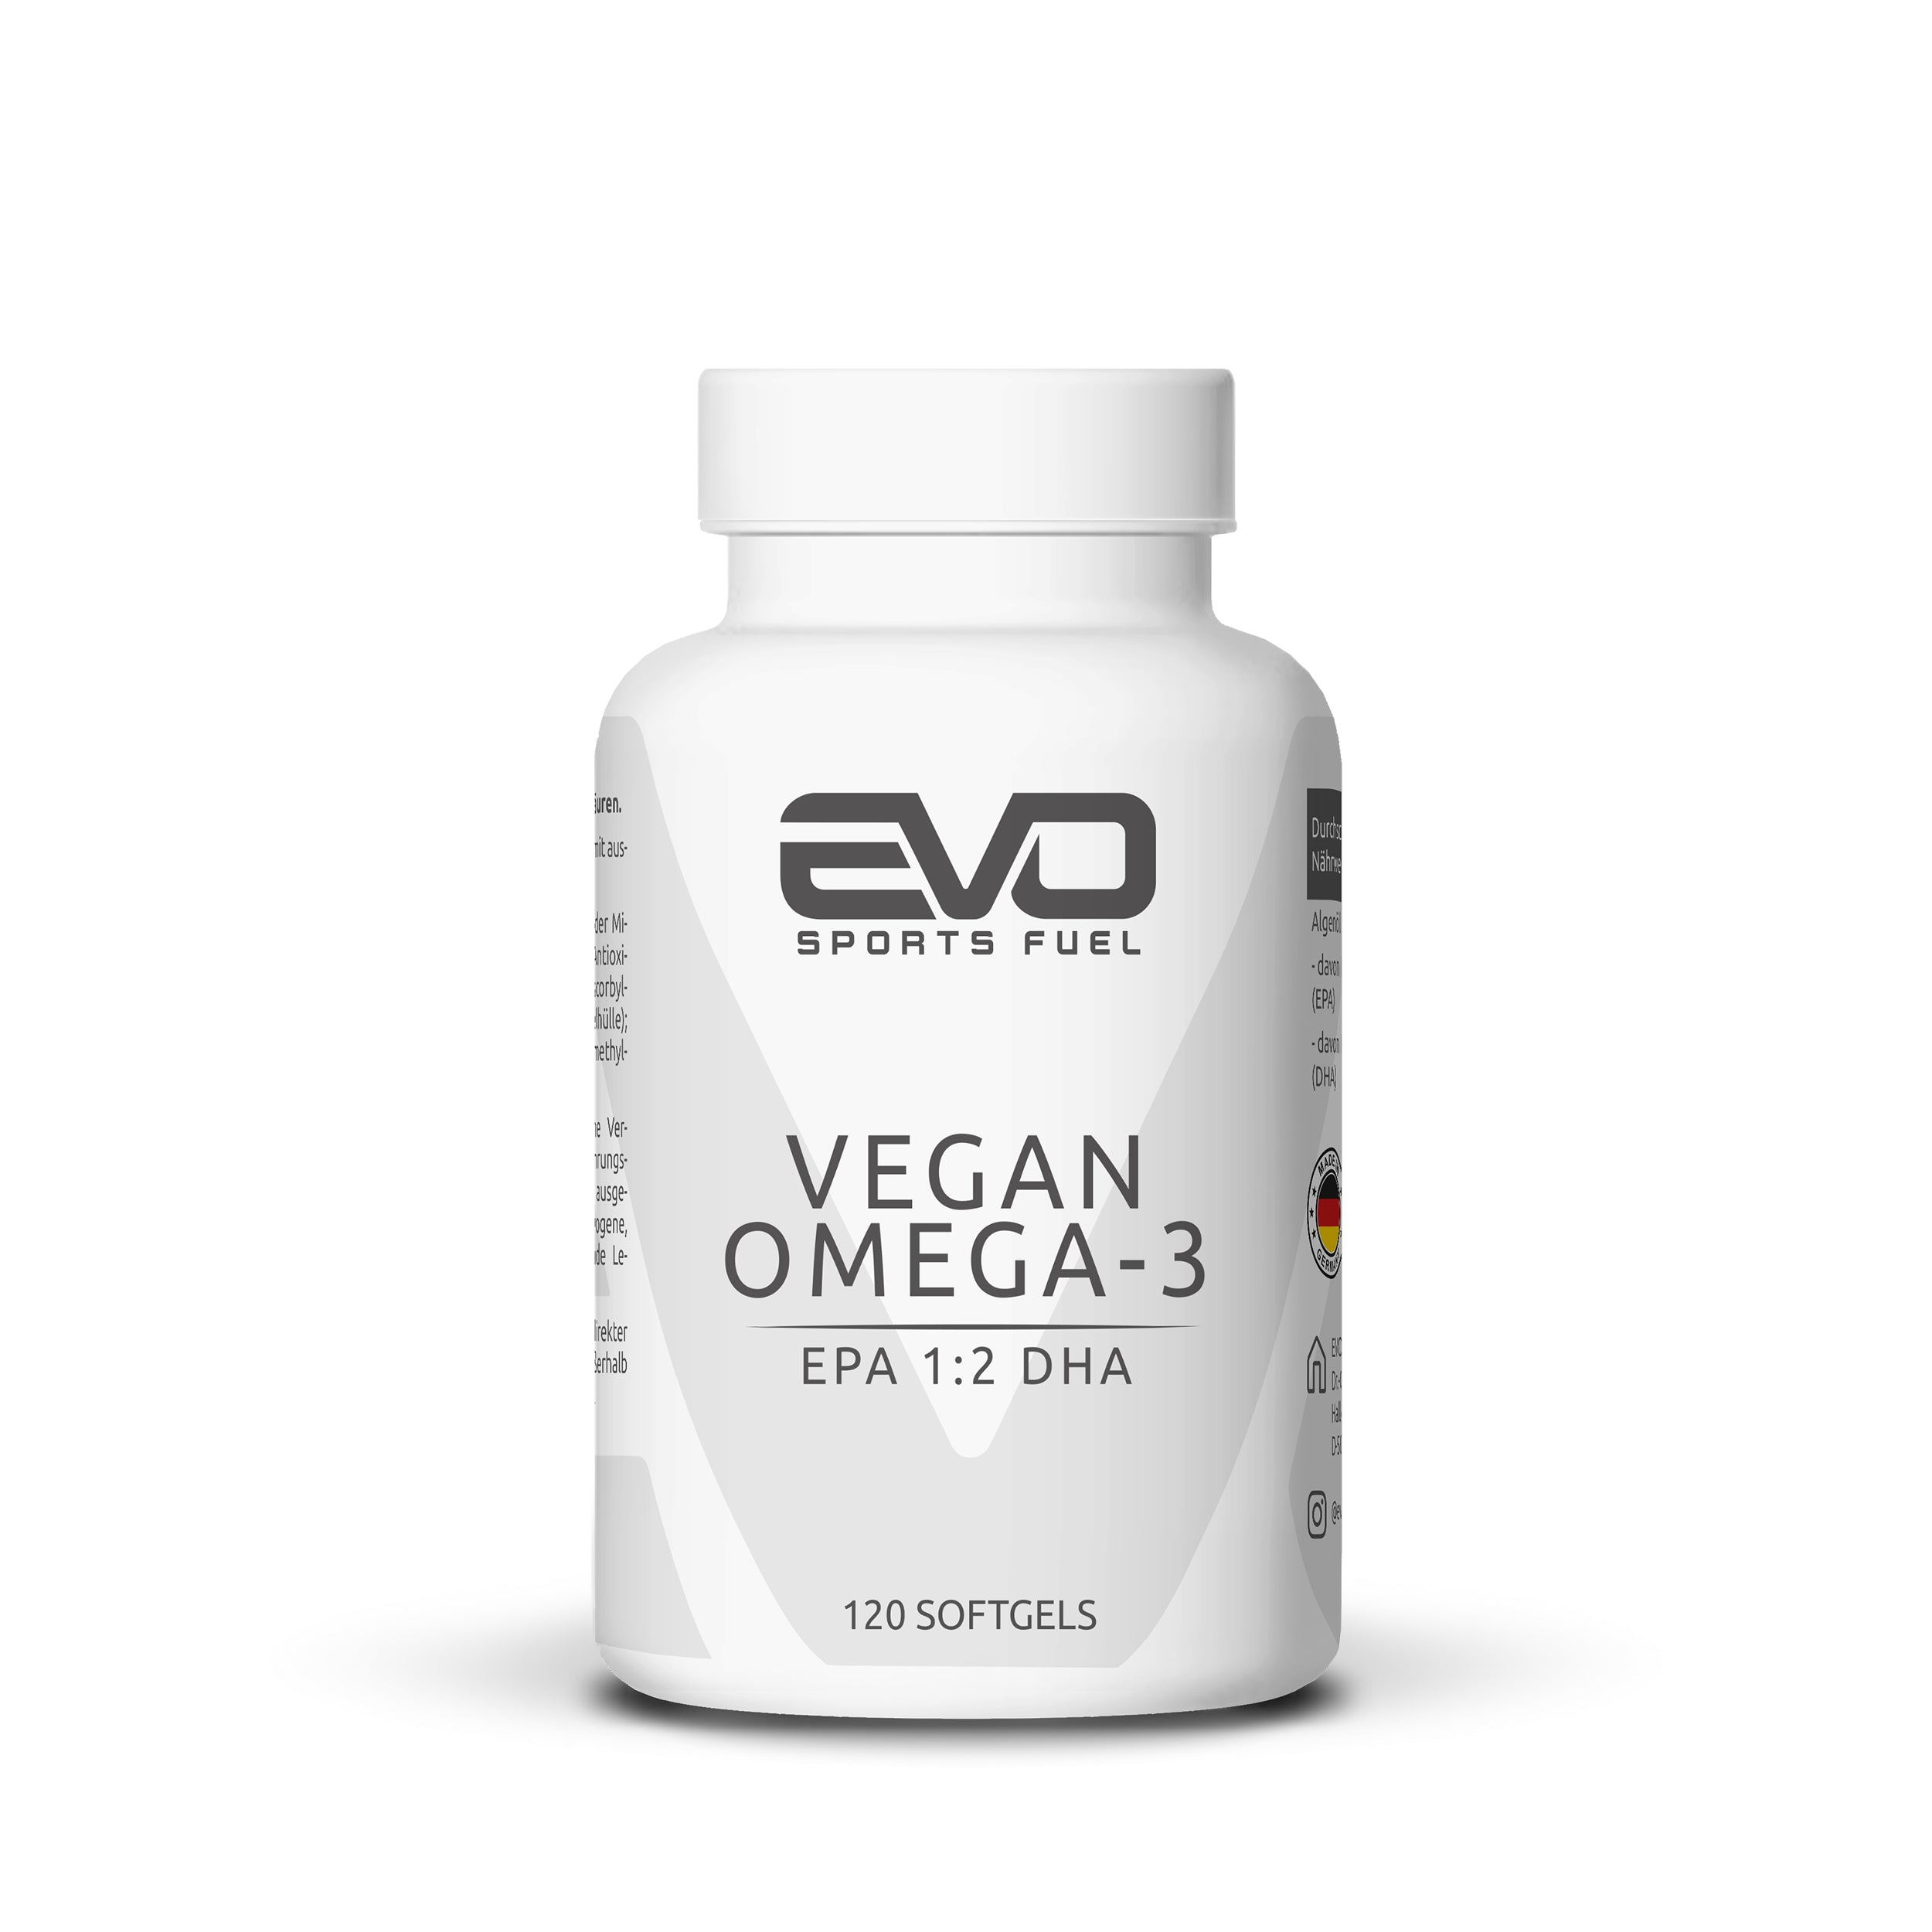 EVO Omega-3 Vegan